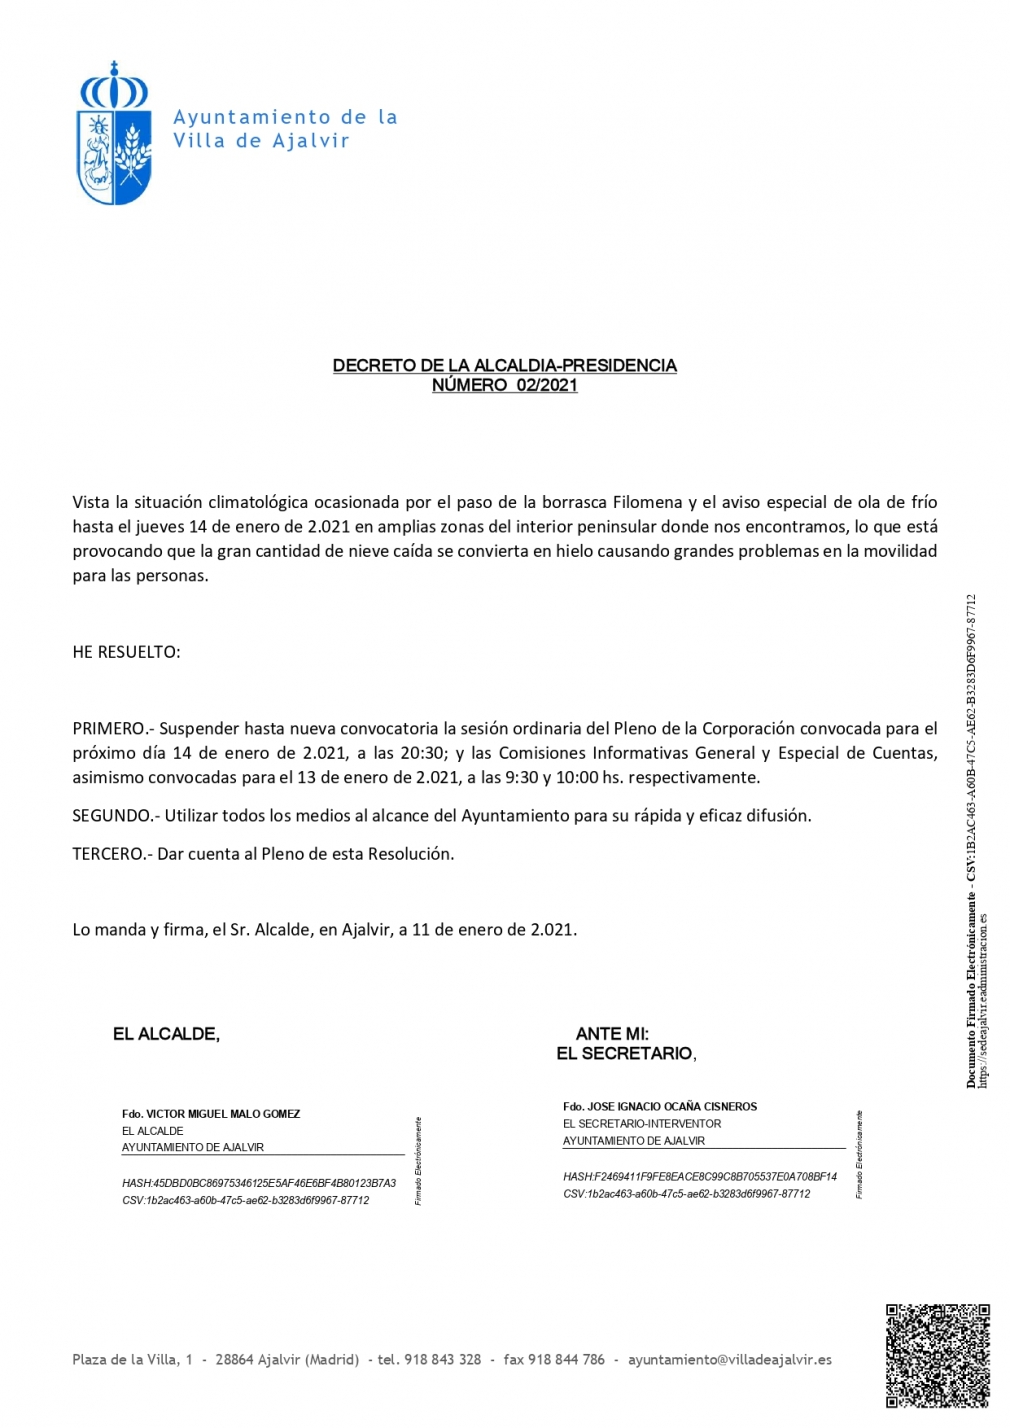 DECRETO DE LA ALCALDIA-PRESIDENCIA NÚMERO 02/2021